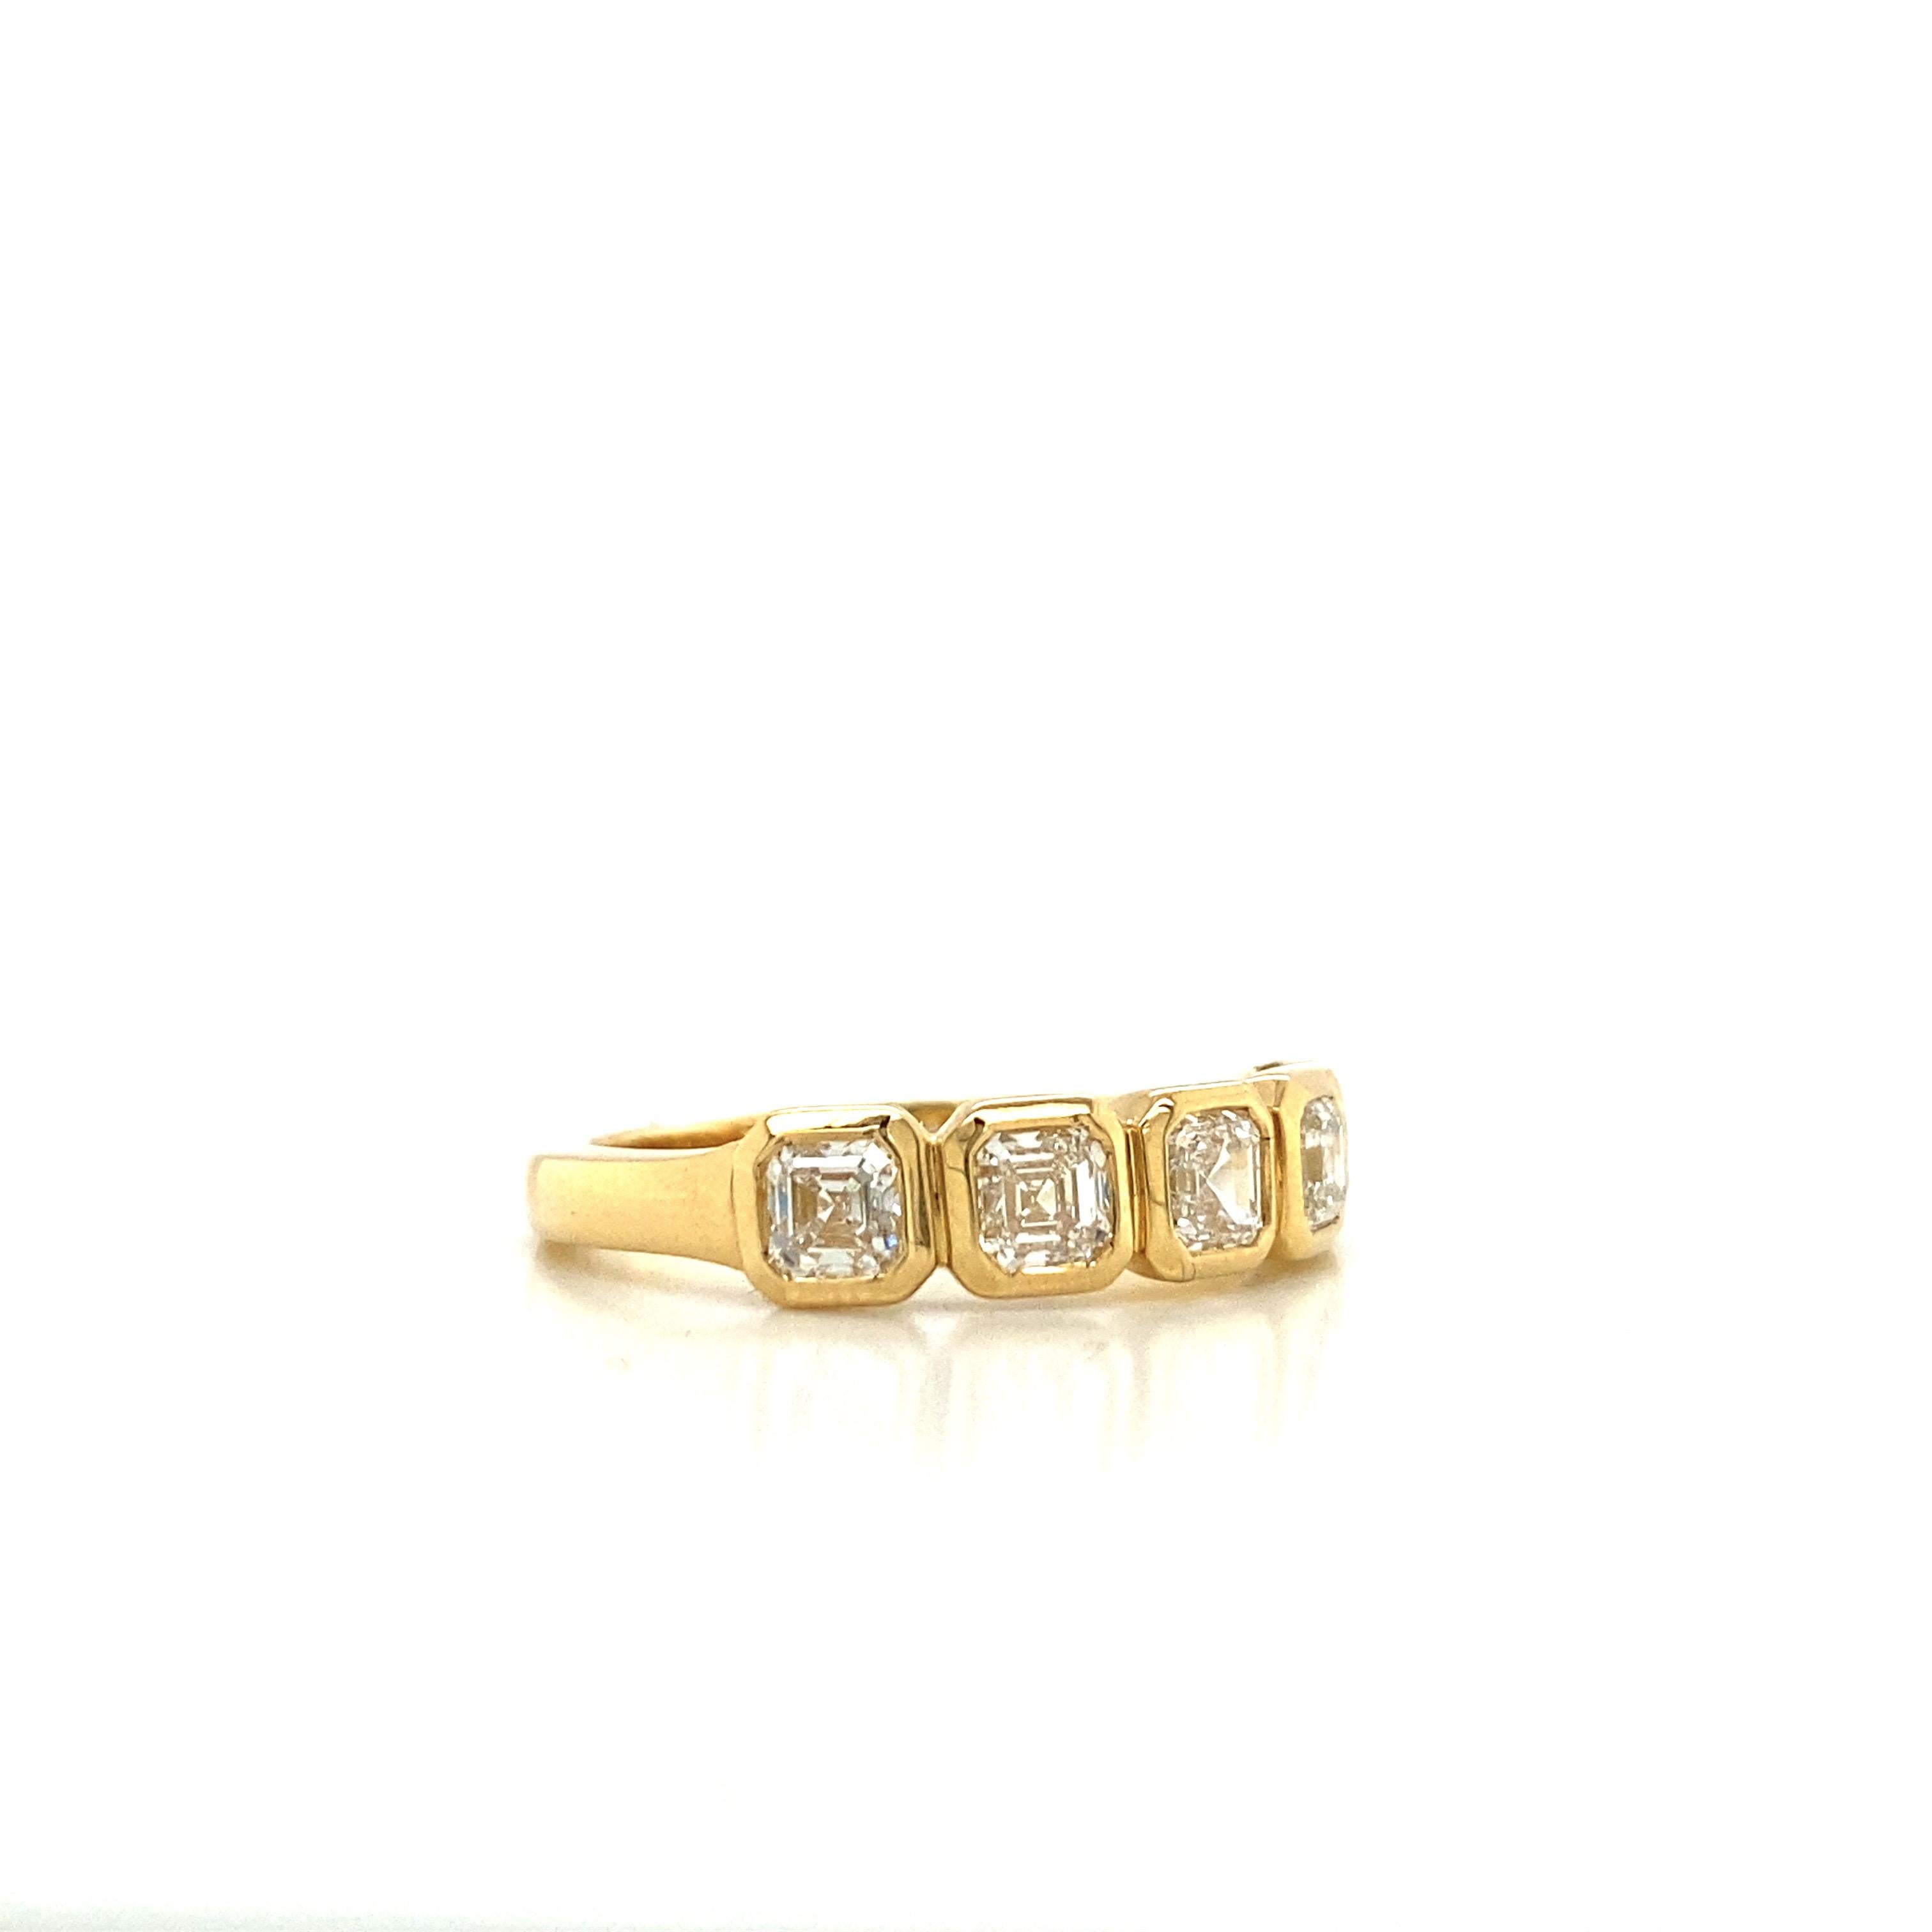 Dieser Asscher Diamant Jahrestag Band verfügt über 5 Asscher Diamanten, mit einem Gesamtgewicht von 1,10 Karat. Die Steine sind in einer Lünettenfassung gefasst, die die Form und die Ecken umreißt und dem Ring ein schönes Aussehen verleiht. Die